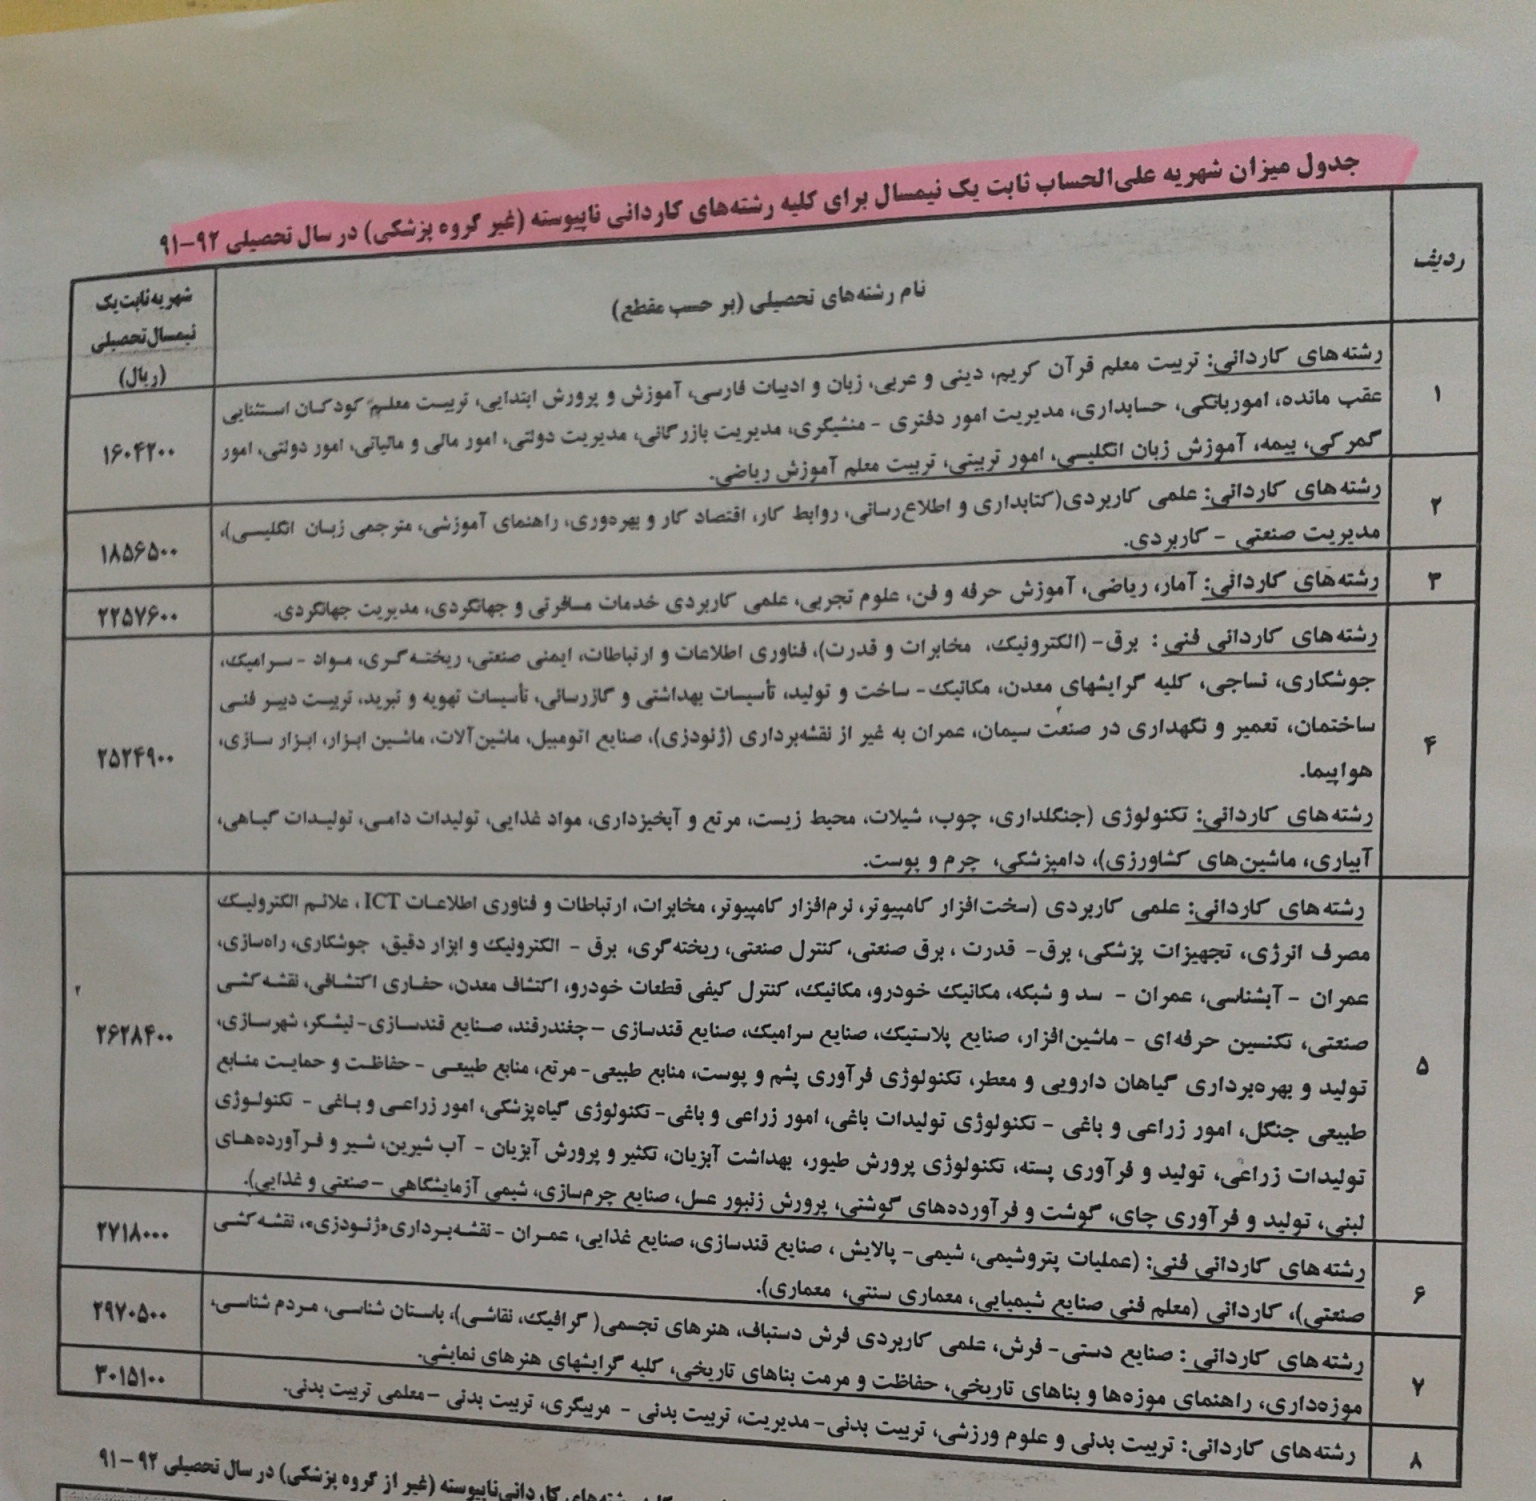 جدول میزان شهریه علی الحساب یک نیمسال برای کلیه رشته های کاردانی ناپیوسته ( غیر گروه پزشکی ) در سال 91-